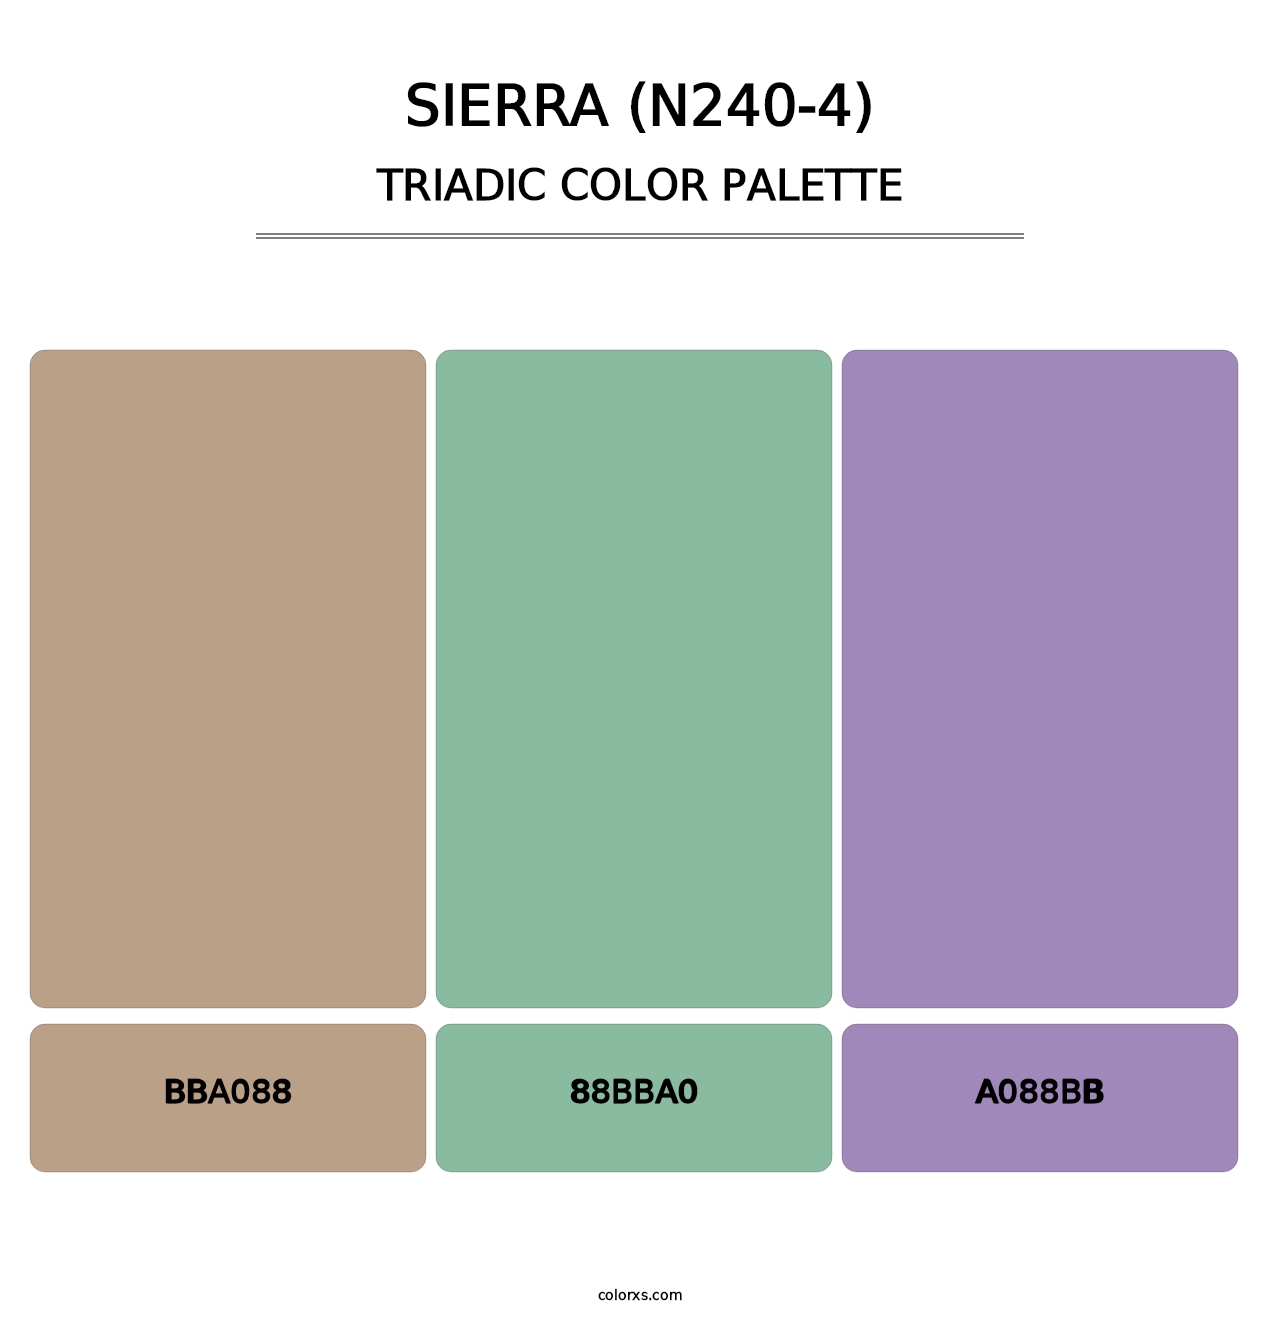 Sierra (N240-4) - Triadic Color Palette